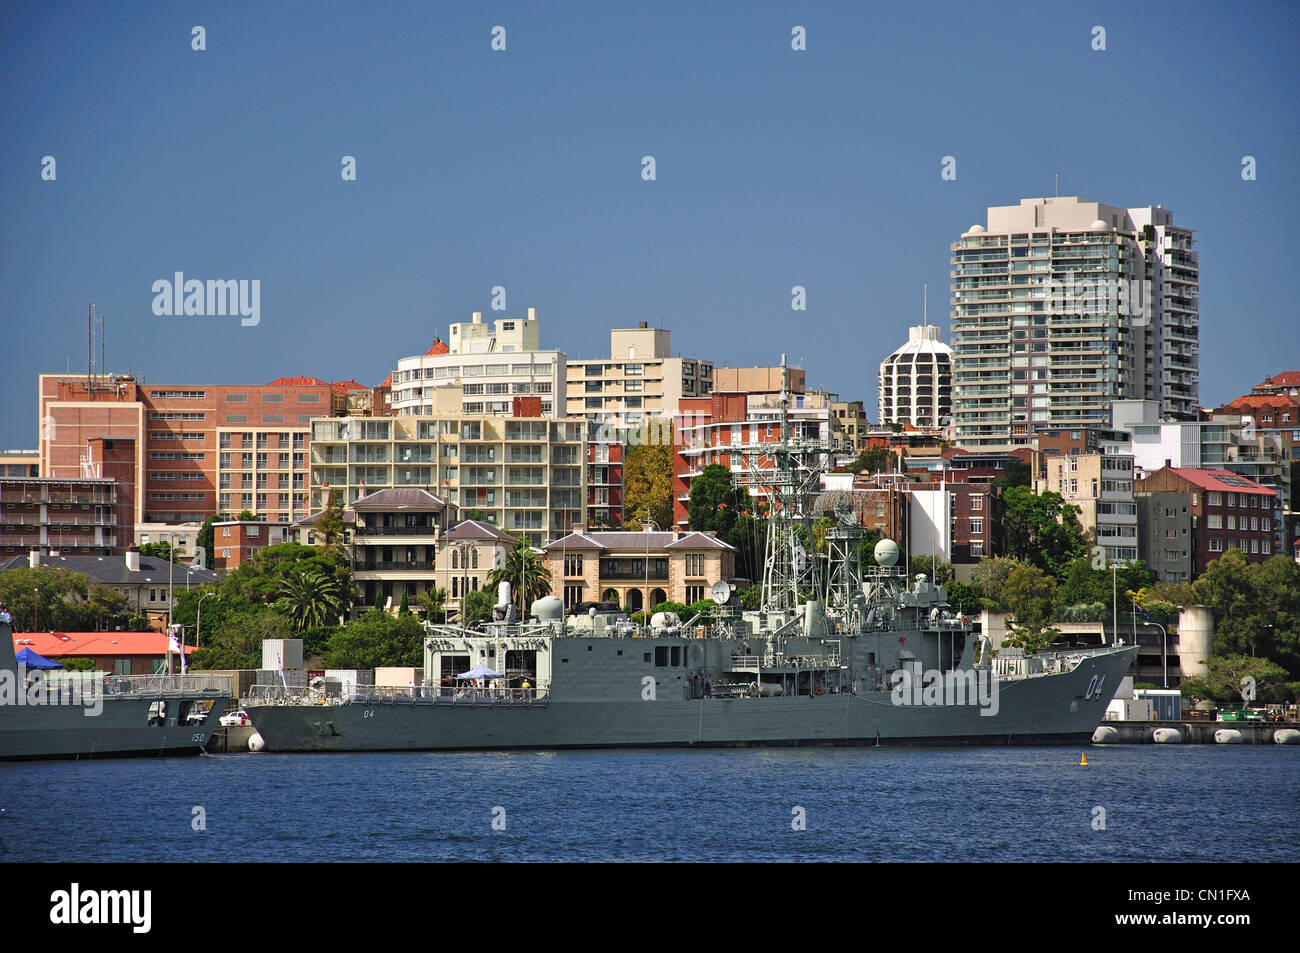 Navire militaire dans la baie de Woolloomooloo, Sydney, New South Wales, Australia Banque D'Images